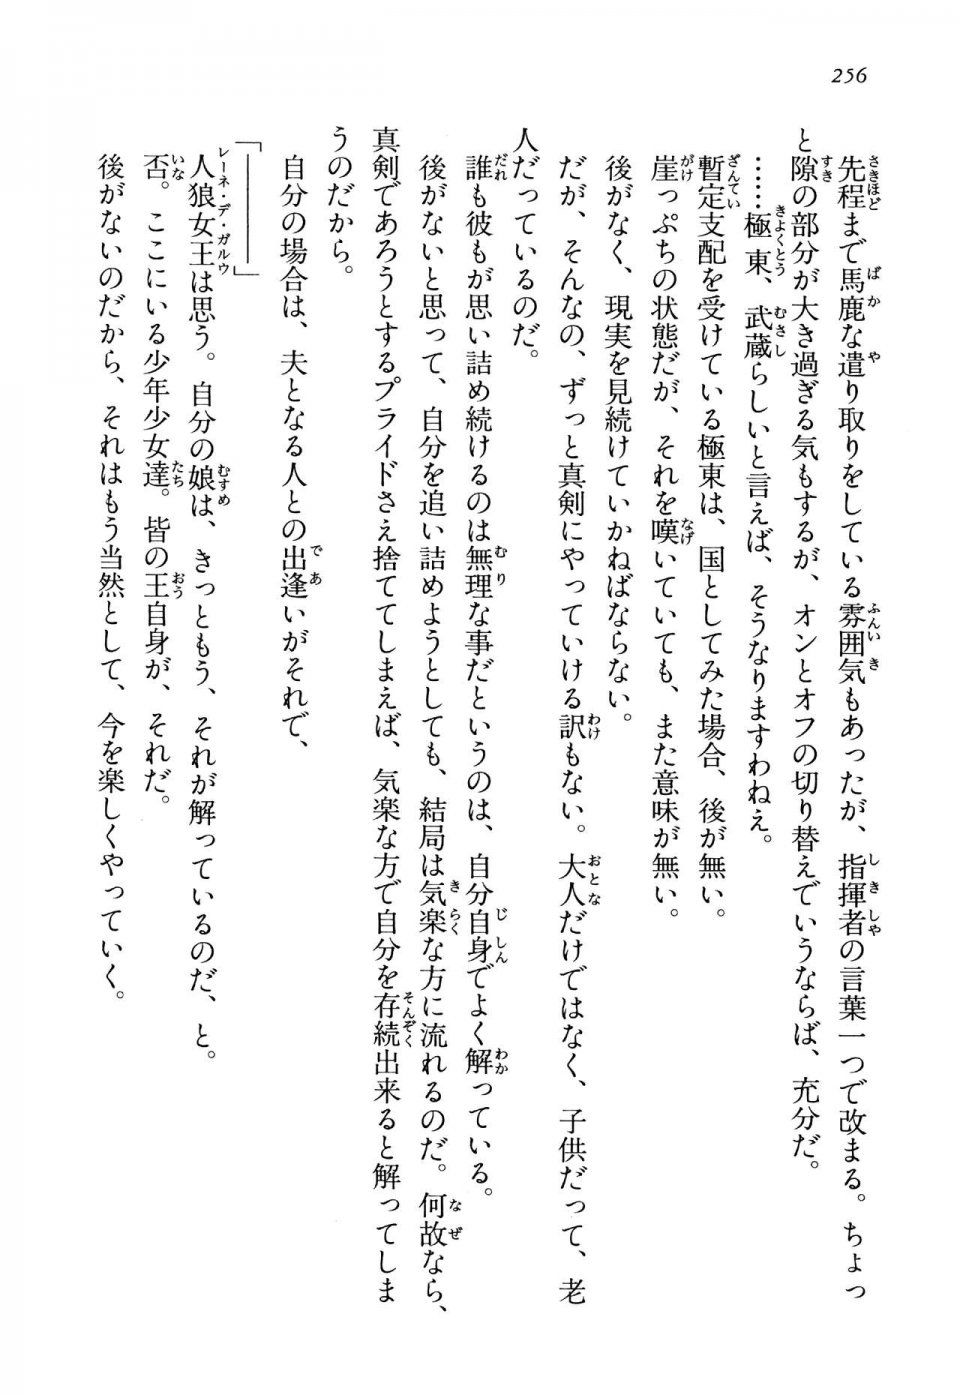 Kyoukai Senjou no Horizon LN Vol 13(6A) - Photo #256